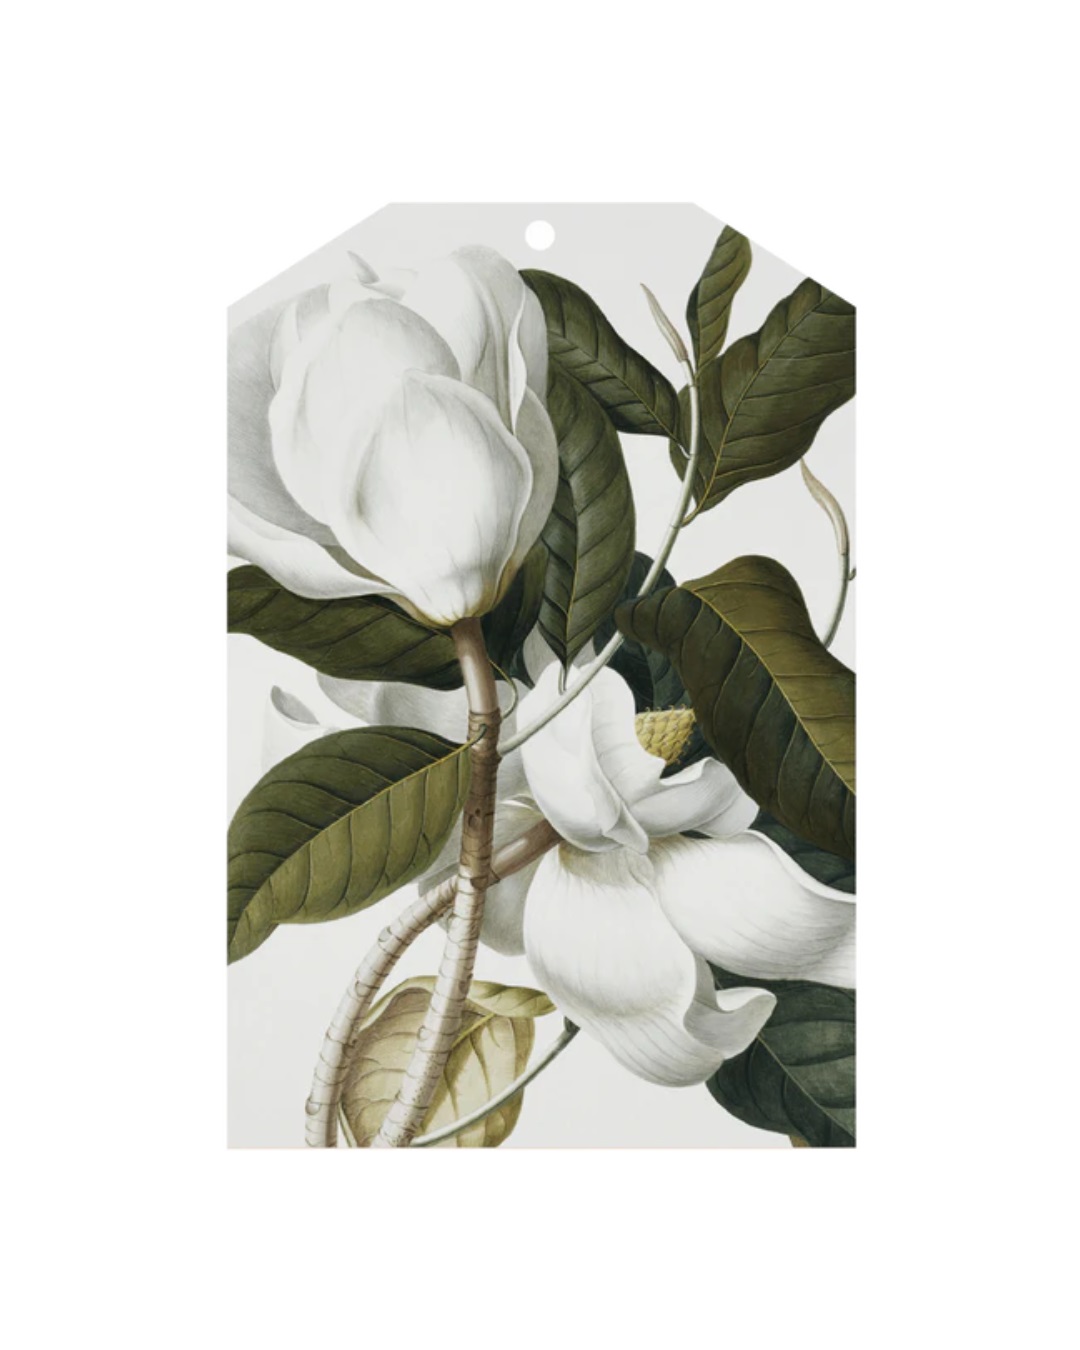 Tag with white gardenias